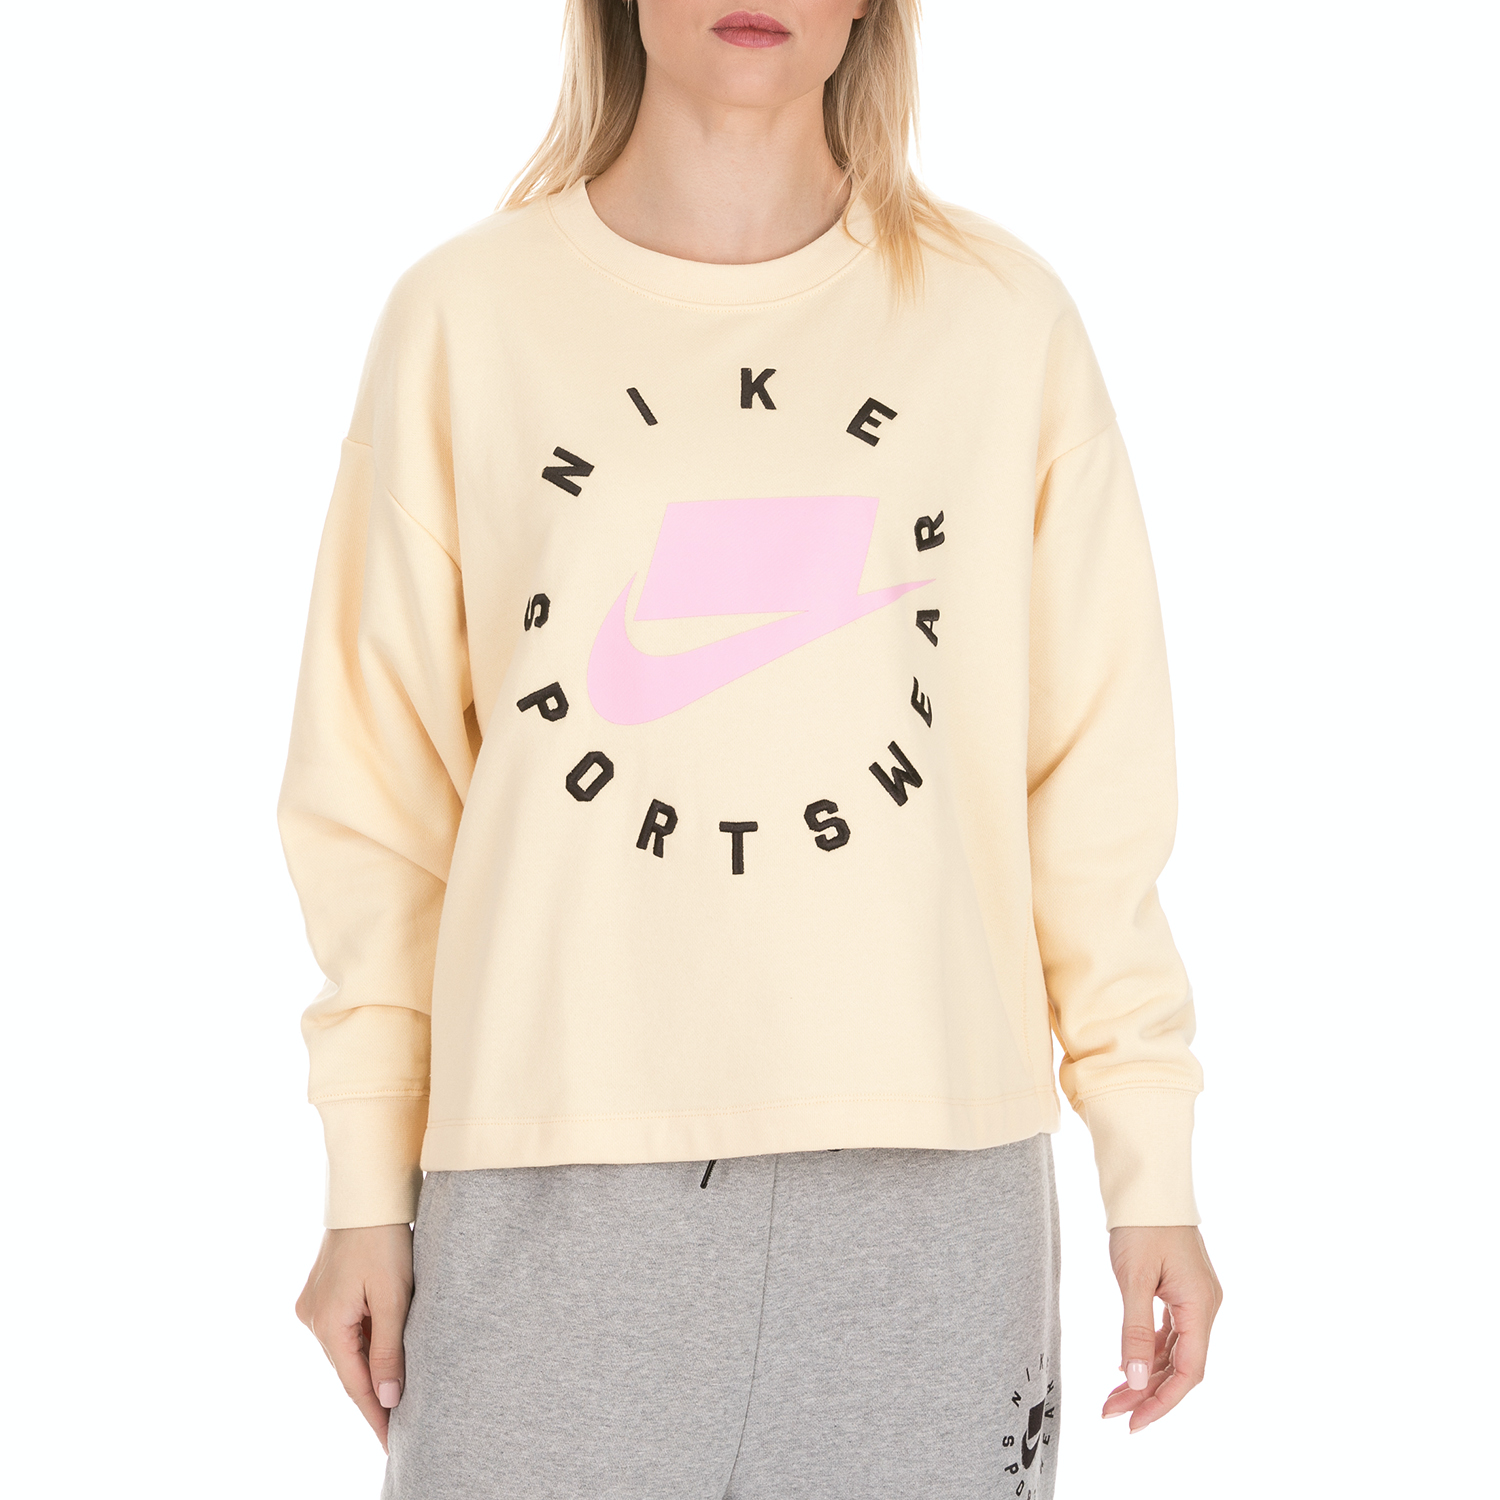 NIKE - Γυναικεία φούτερ μπλούζα NIKE μπεζ ροζ Γυναικεία/Ρούχα/Φούτερ/Μπλούζες